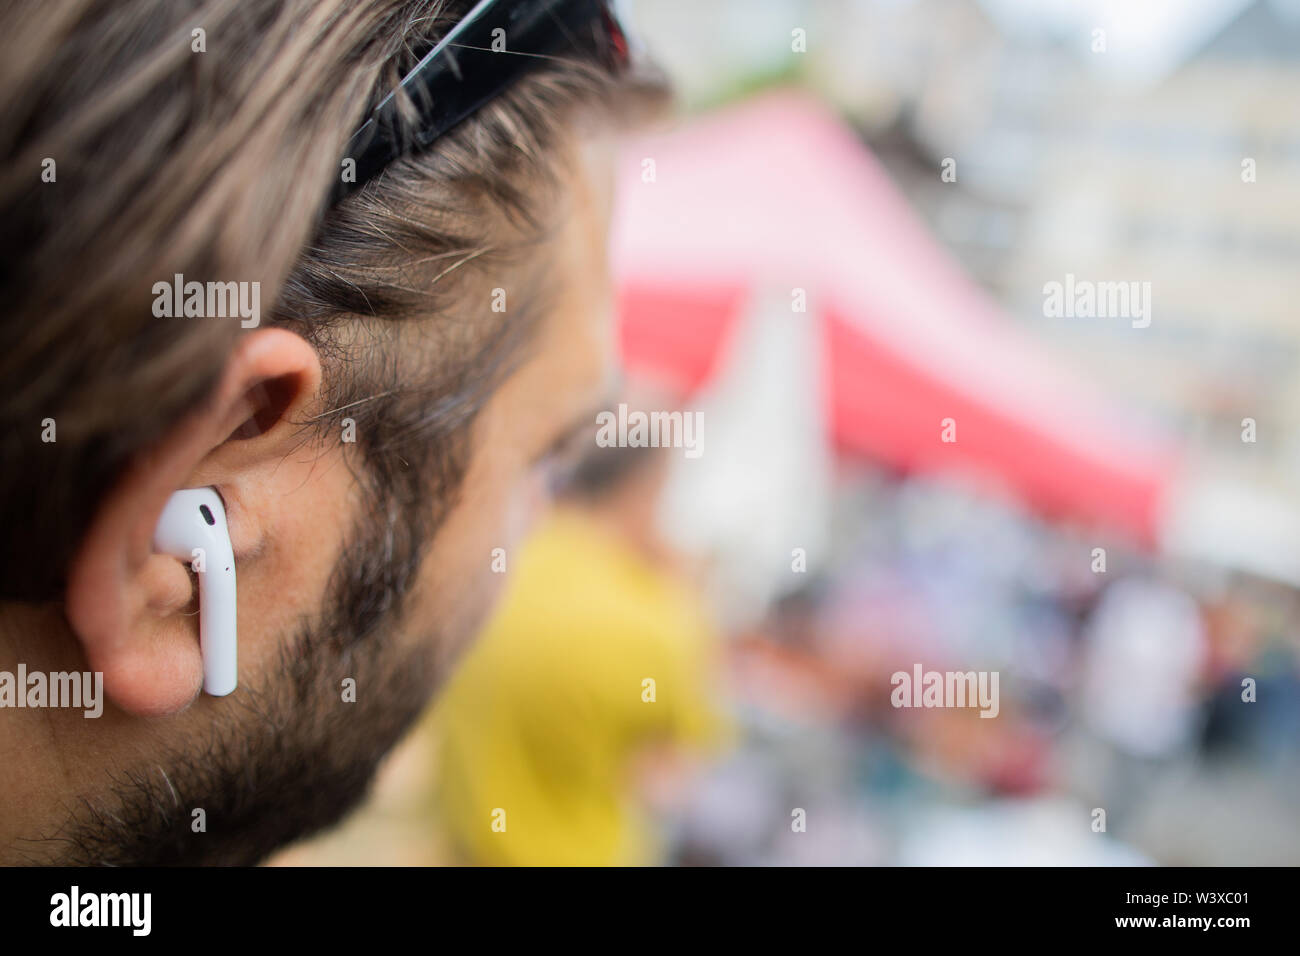 Köln, Deutschland. 12. Juli, 2019. Ein Mann trägt AirPods, drahtlose  Kopfhörer von Apple in seinen Ohren. Einkaufsmöglichkeiten, Bahn, Freunde  treffen oder herauf Kinder aus der Schule - mehr und mehr Menschen alles